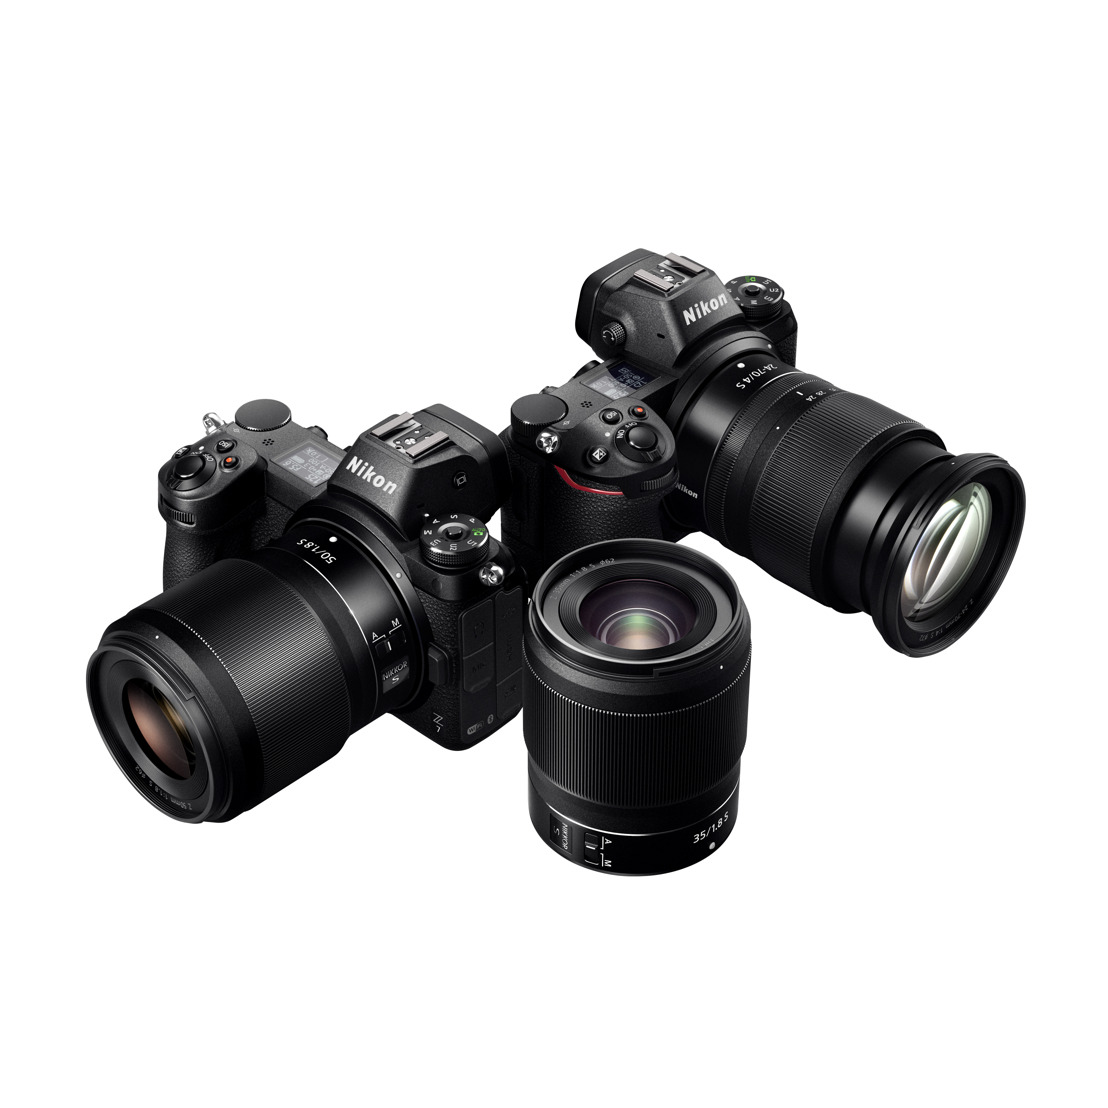 Nikon introduceert het nieuwe Z-vattingsysteem en brengt twee full-frame systeemcamera's uit: de Z 7 en Z 6